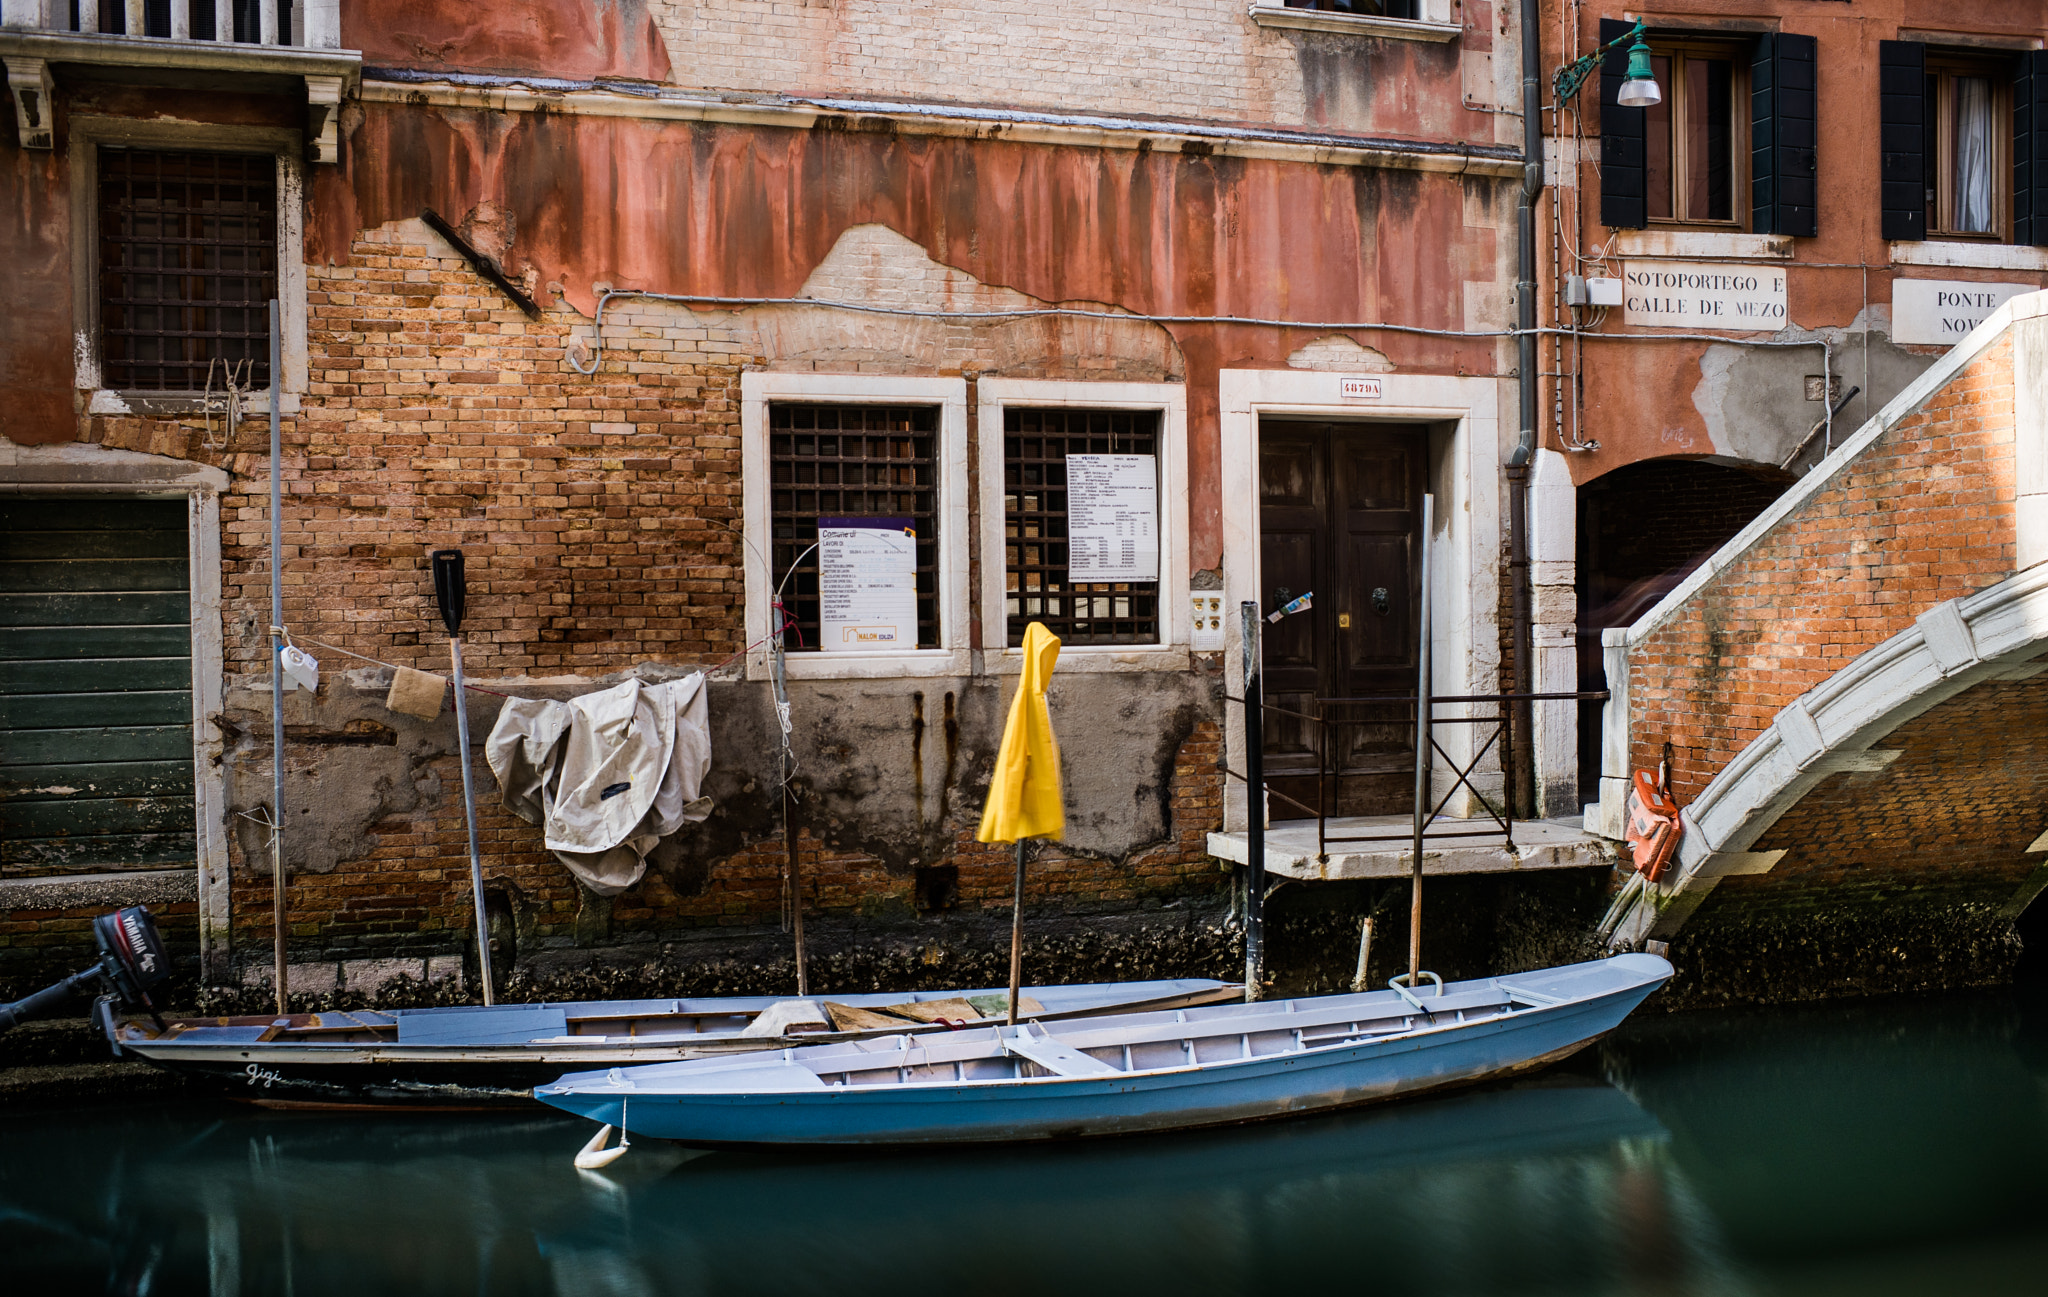 Nikon D750 sample photo. Venise côté canal photography